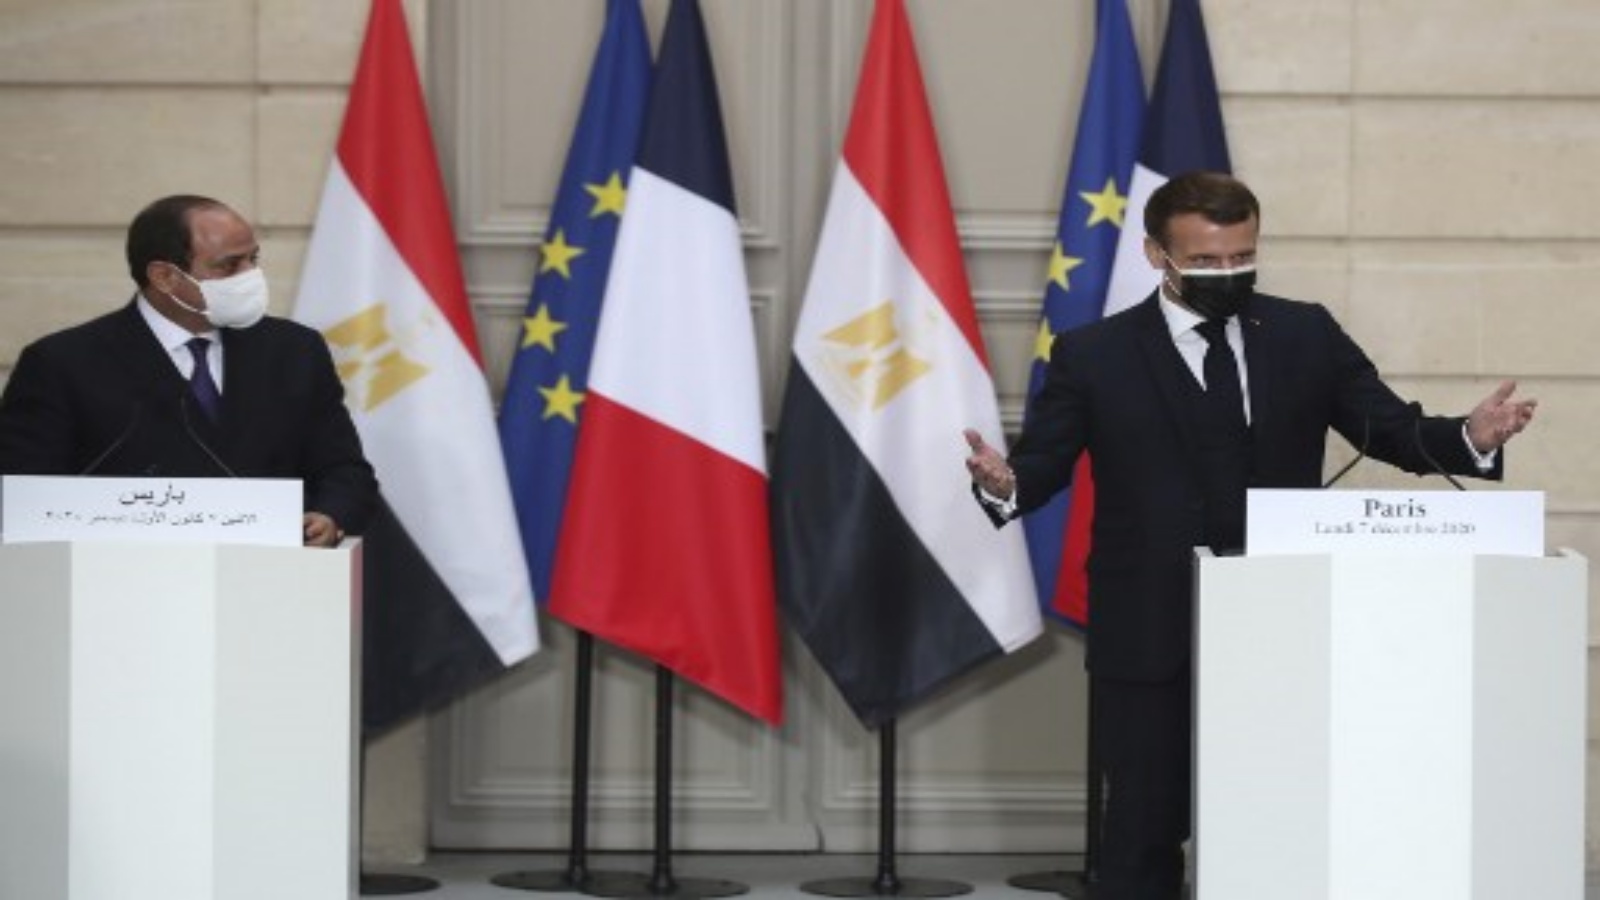 الرئيس الفرنسي إيمانويل ماكرون (إلى اليمين) ونظيره المصري عبد الفتاح السيسي (إلى اليسار) يعقدان مؤتمرا صحفيا عقب لقائهما في قصر الإليزيه الرئاسي يوم 7 ديسمبر 2020 في باريس